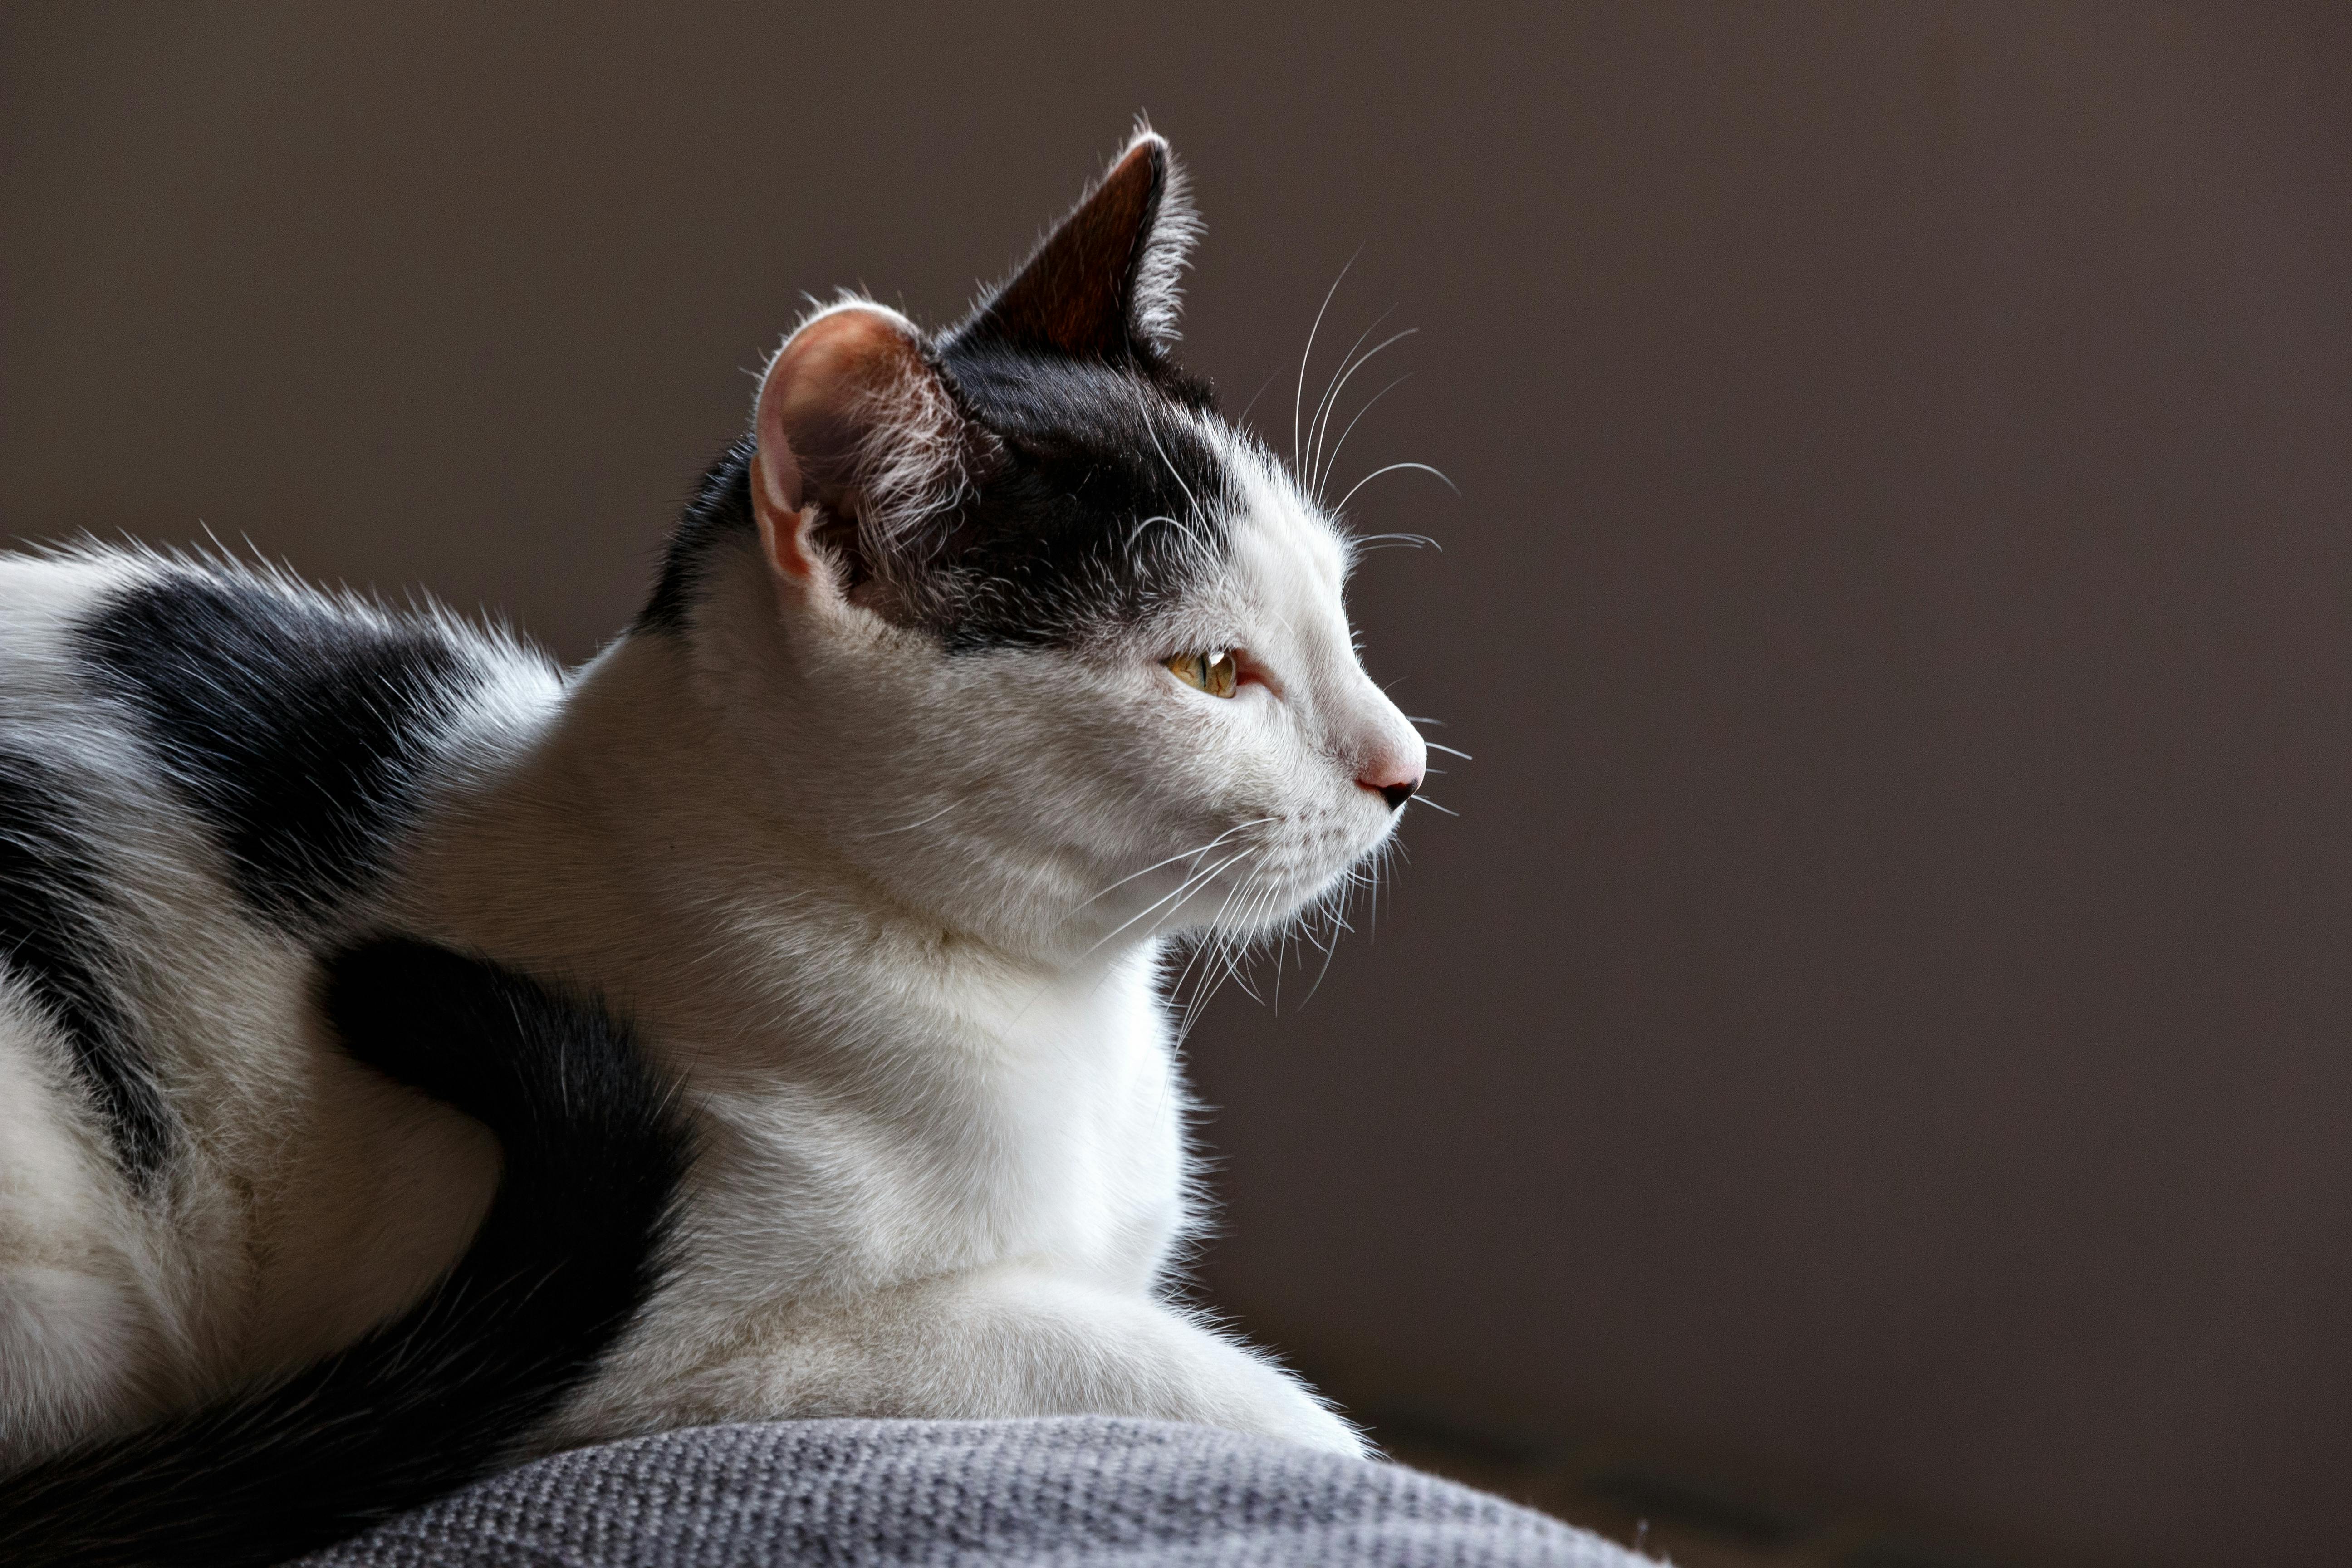 900+ Katzenauge Bilder und Fotos · Kostenlos Downloaden · Pexels Stock-Fotos